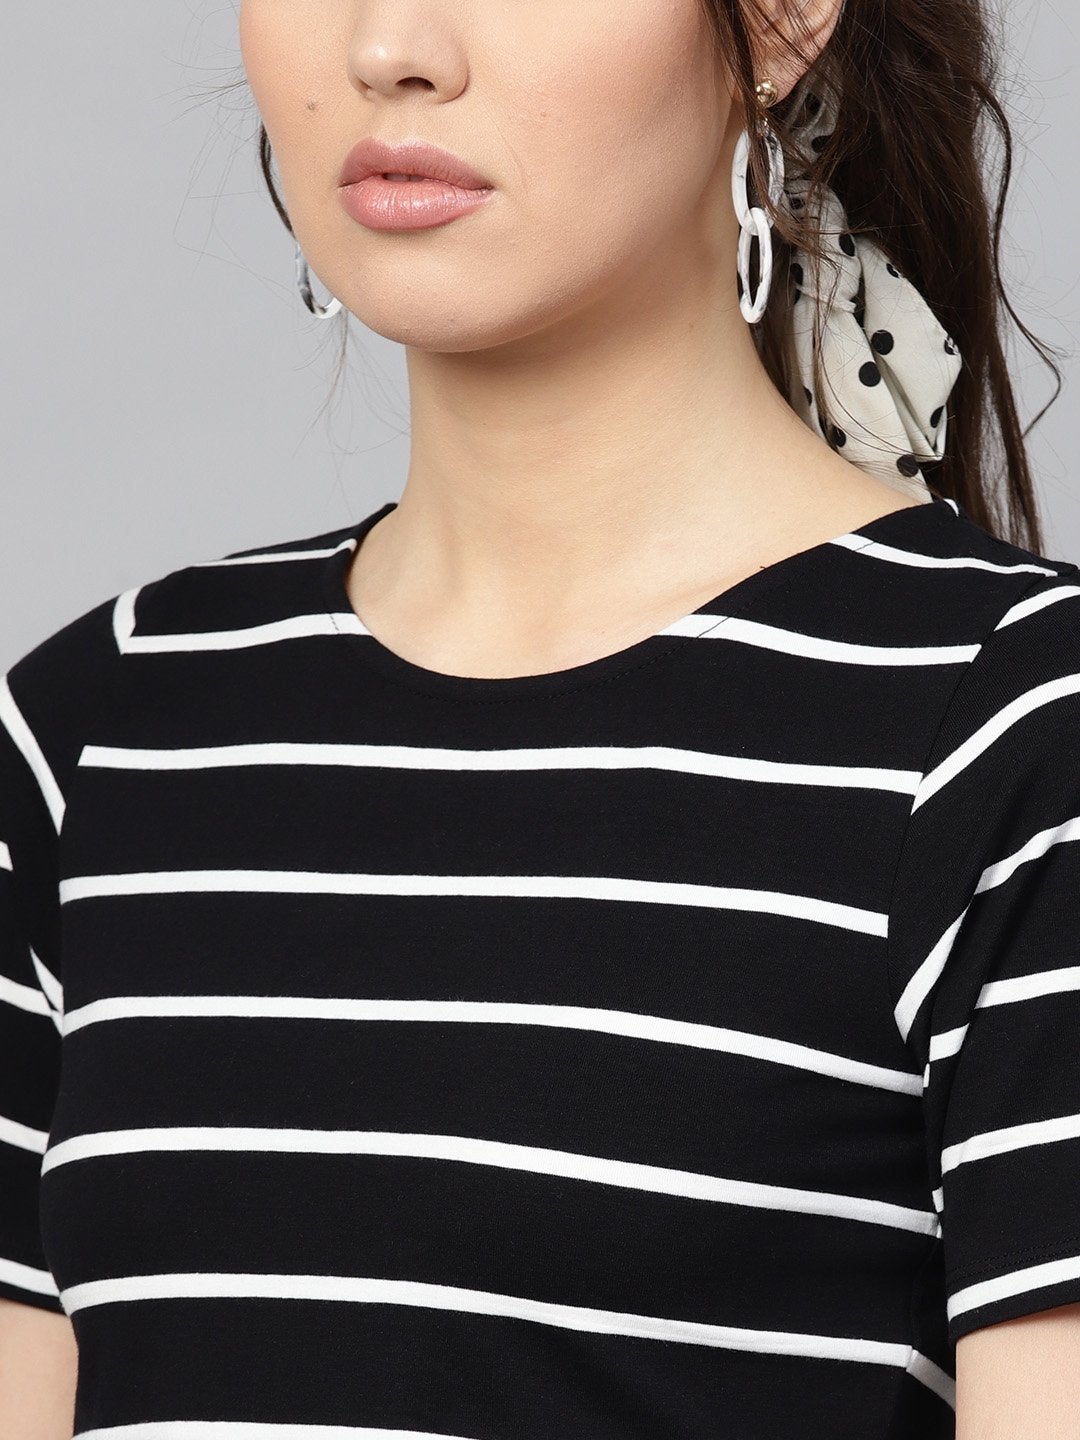 Women's Black White Stripe Crop Top - SASSAFRAS